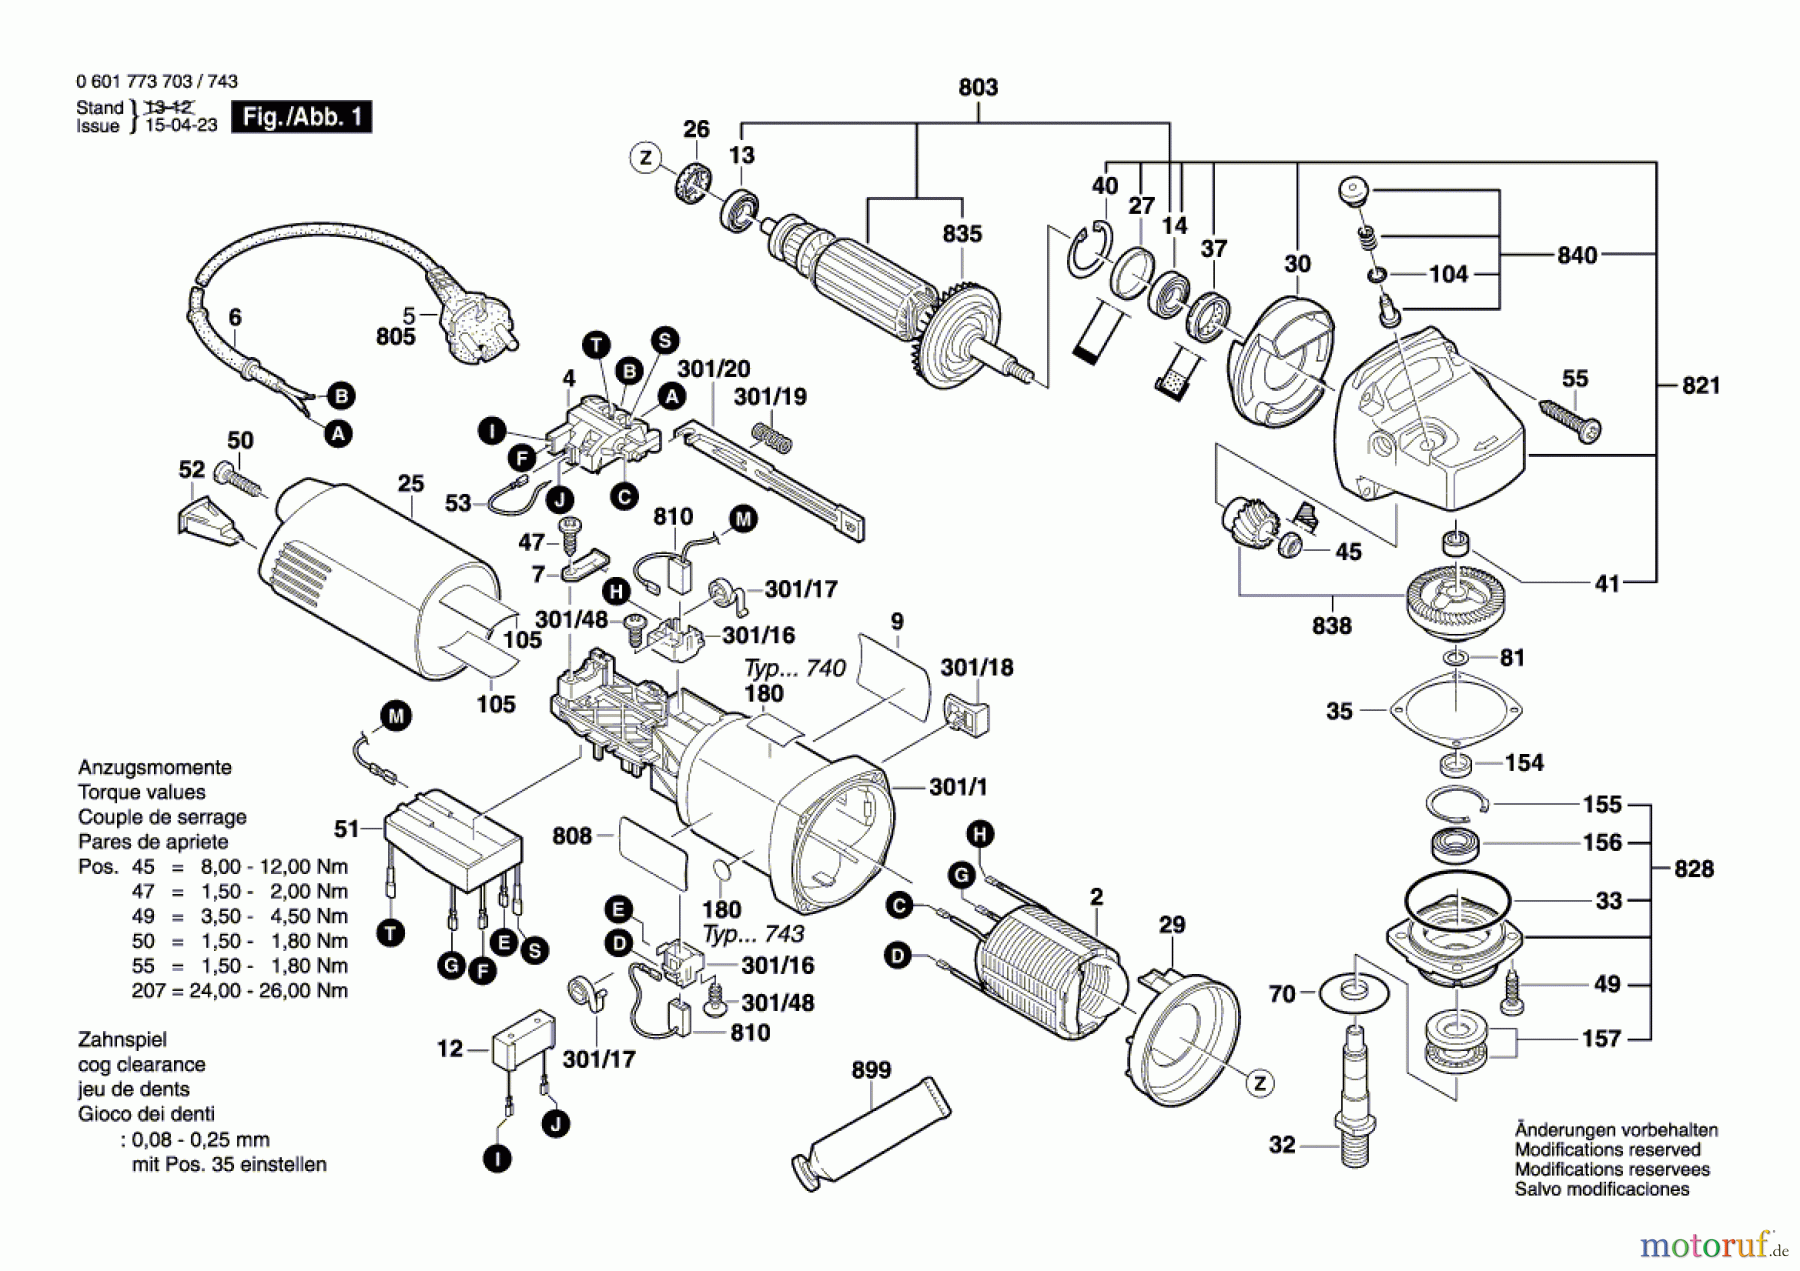  Bosch Werkzeug Betonschleifer GBR 14 CA Seite 1